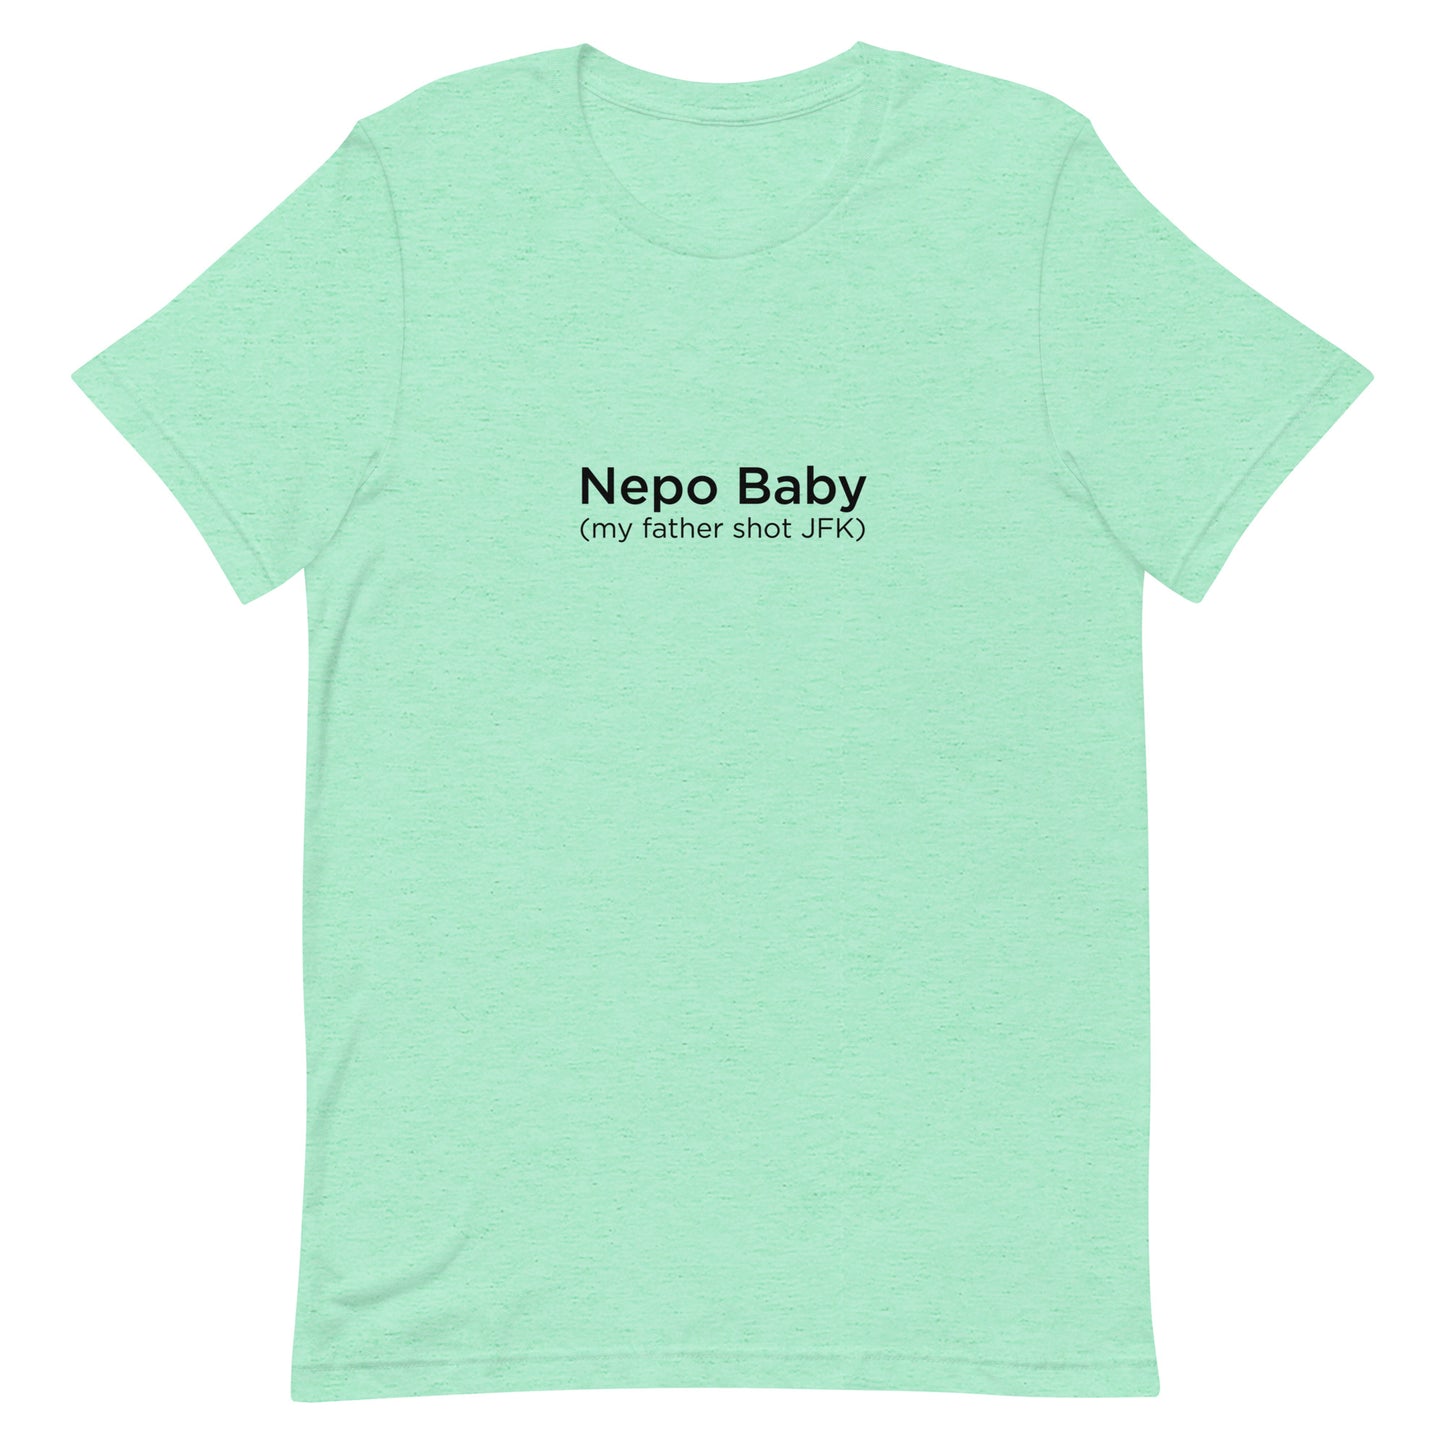 Nepo Baby Unisex t-shirt